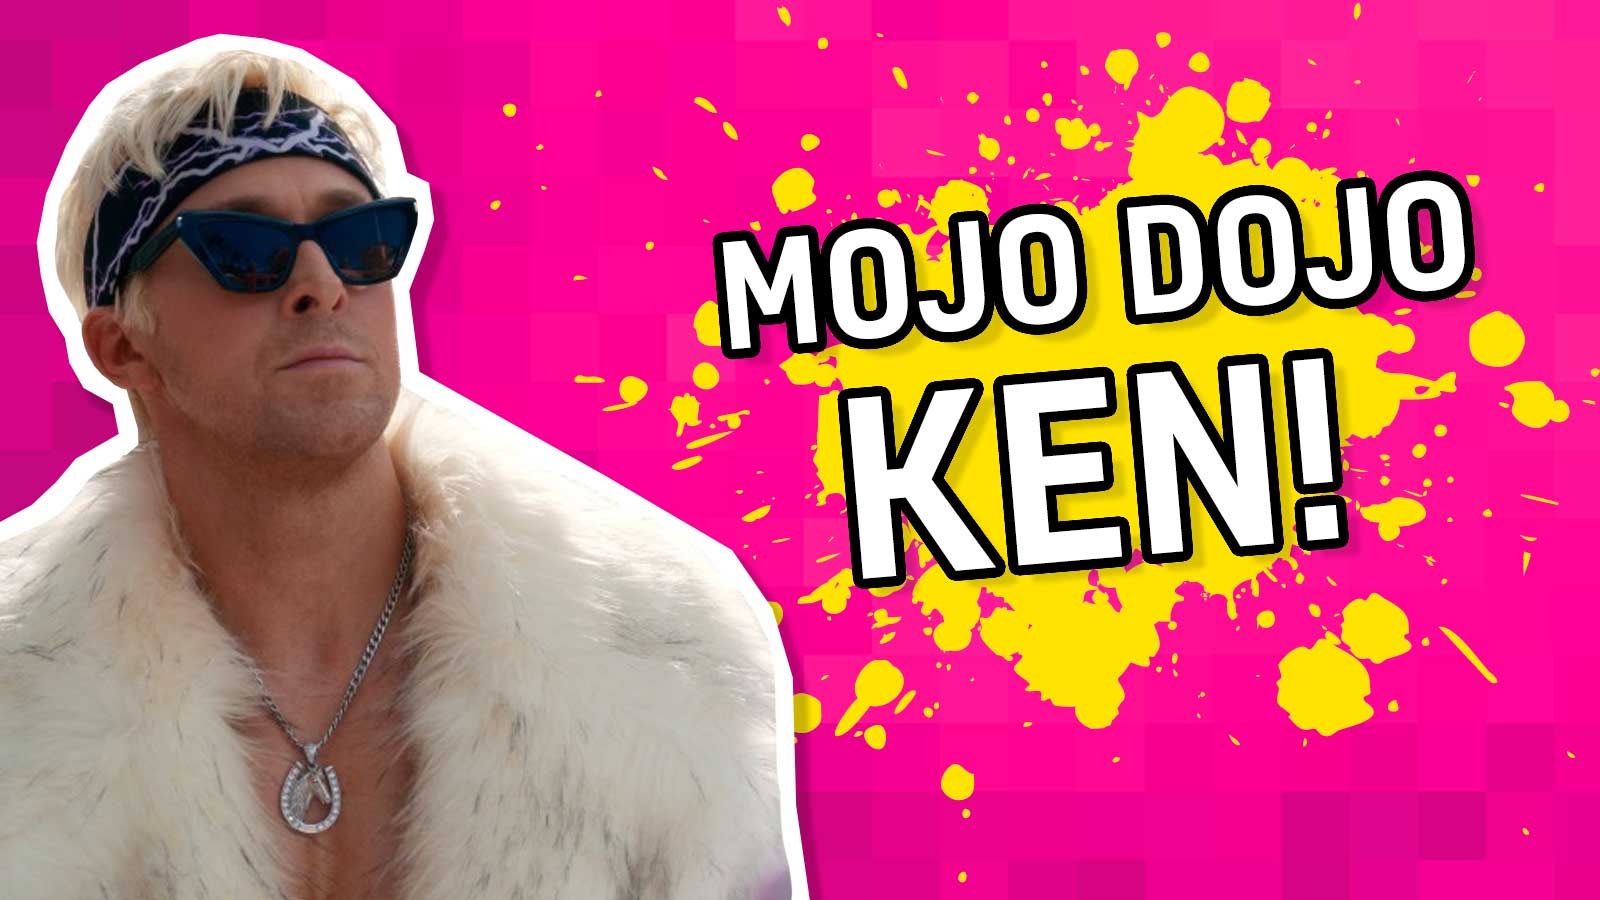 Result: Mojo Dojo Ken